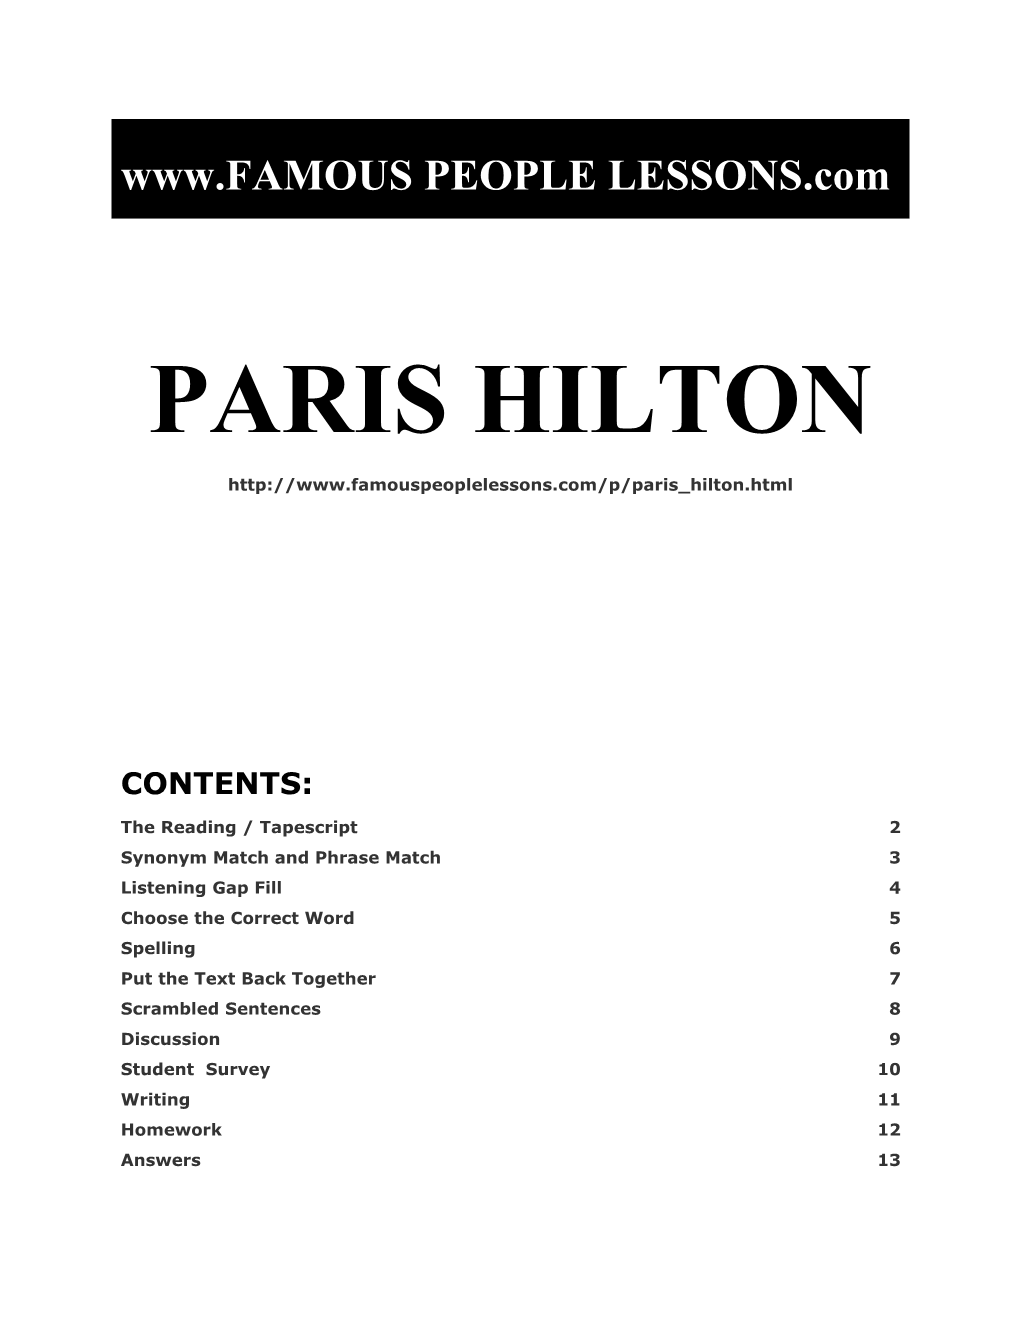 Famous People Lessons - Paris Hilton